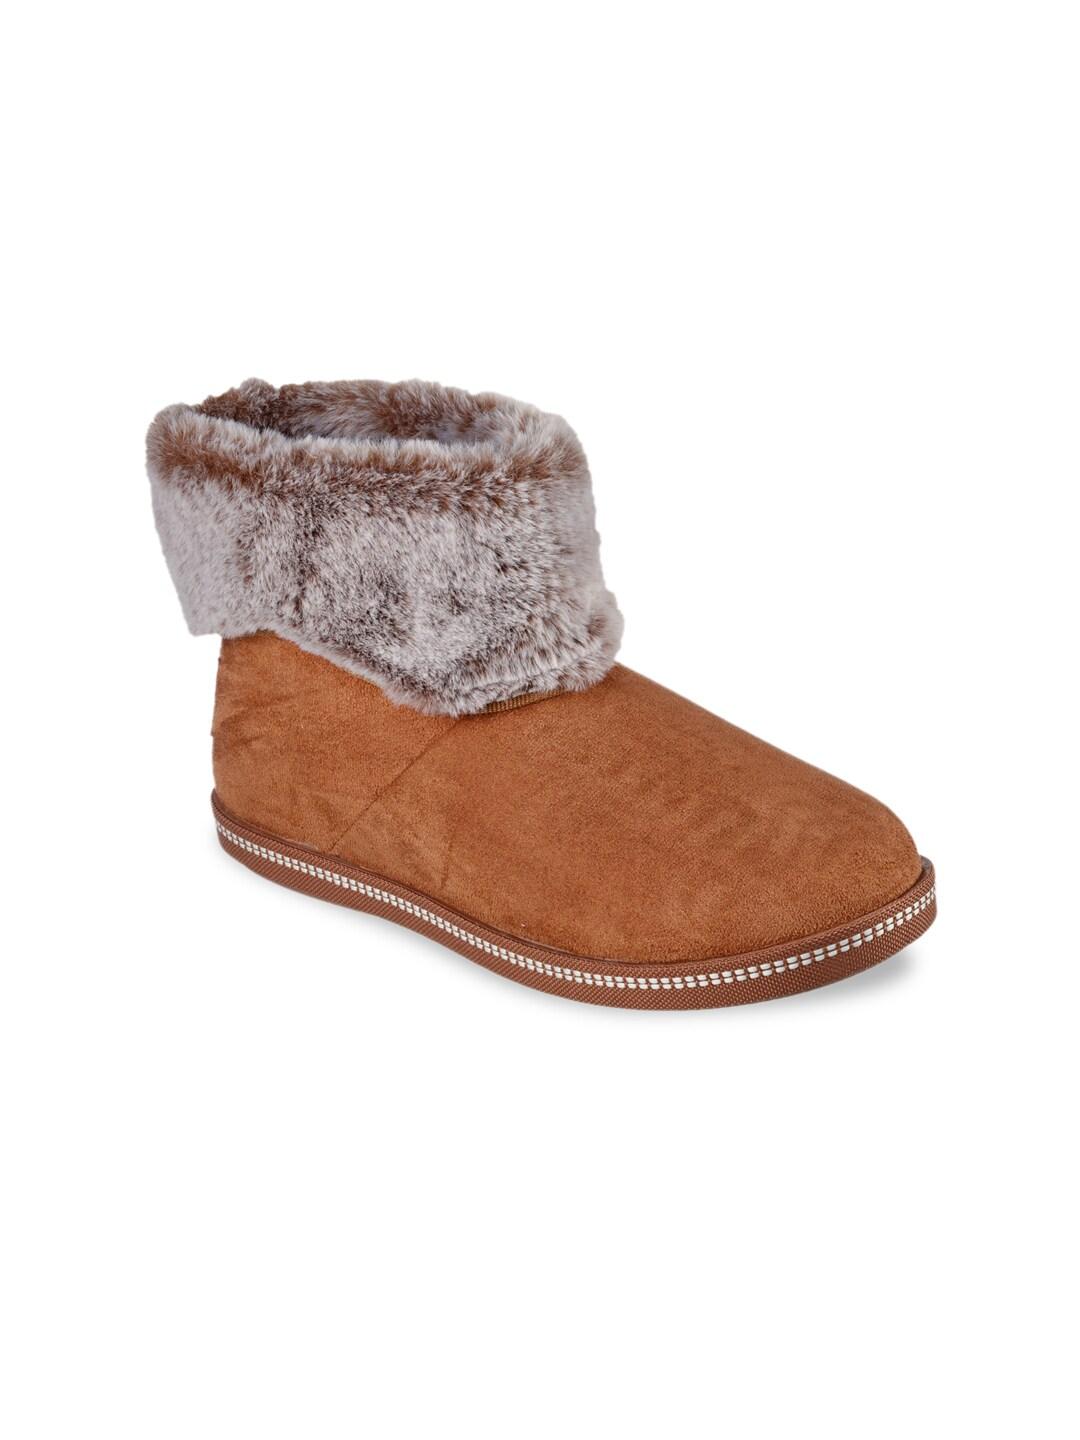 skechers women brown fur winter boots